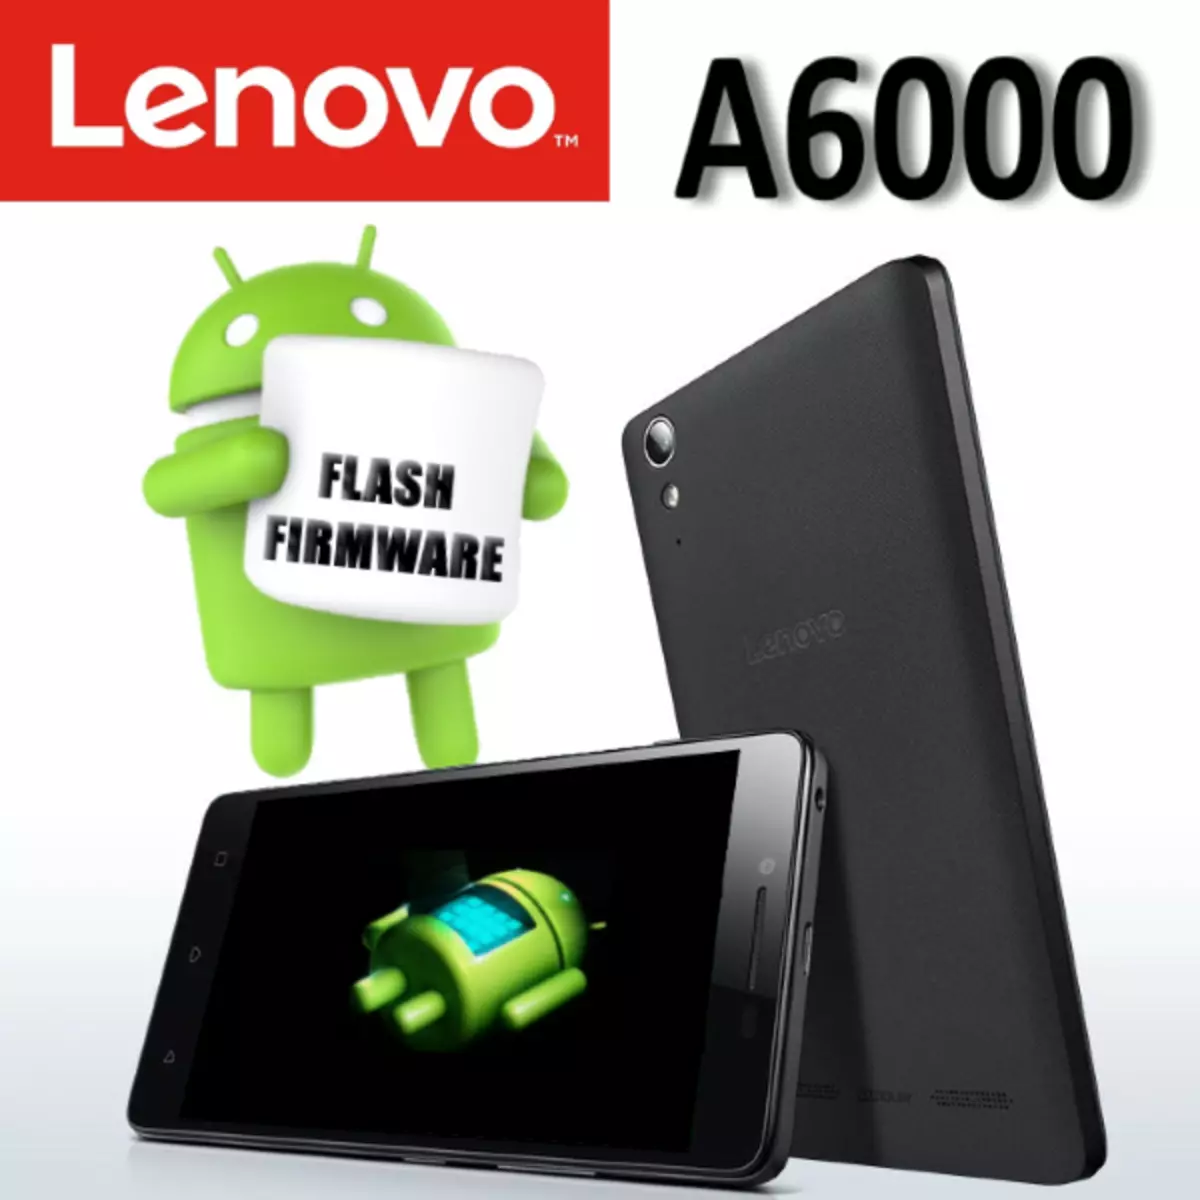 Firmware Lenovo A6000.